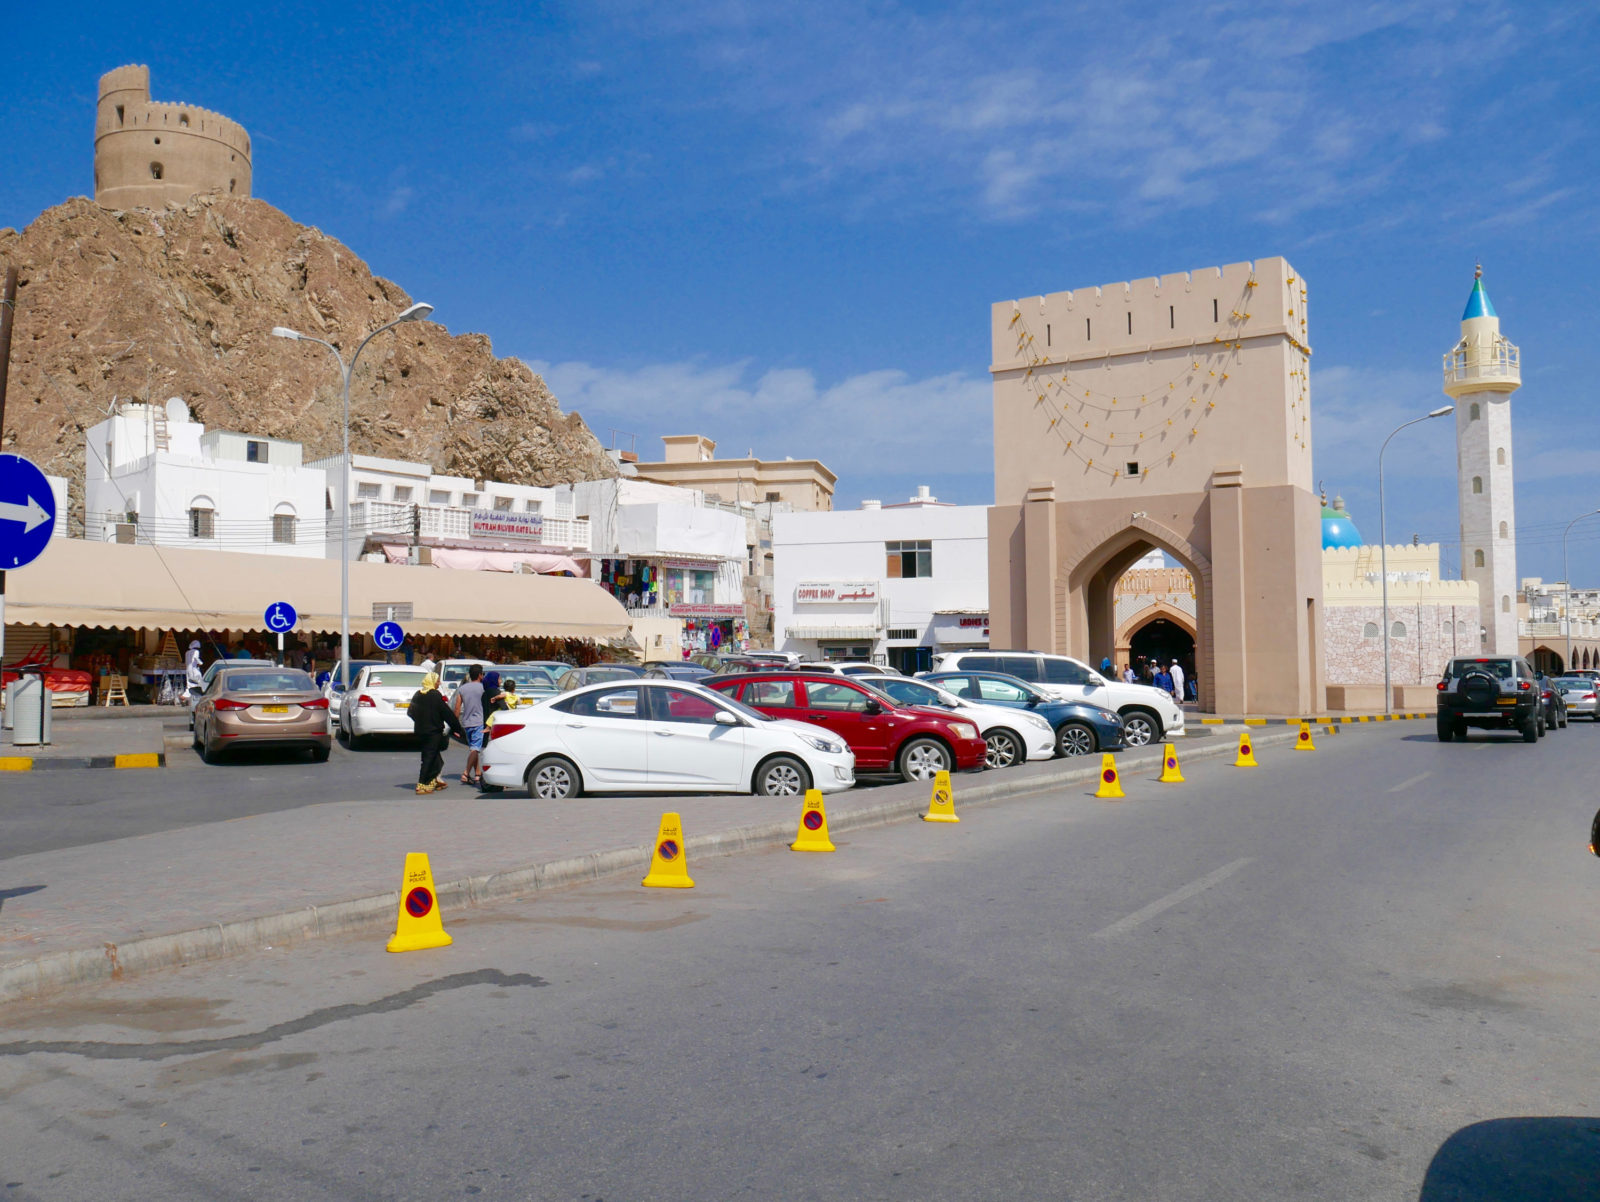 Ist eine Mietwagenrundreise im Oman gefährlich? Ein Erfahrungbericht